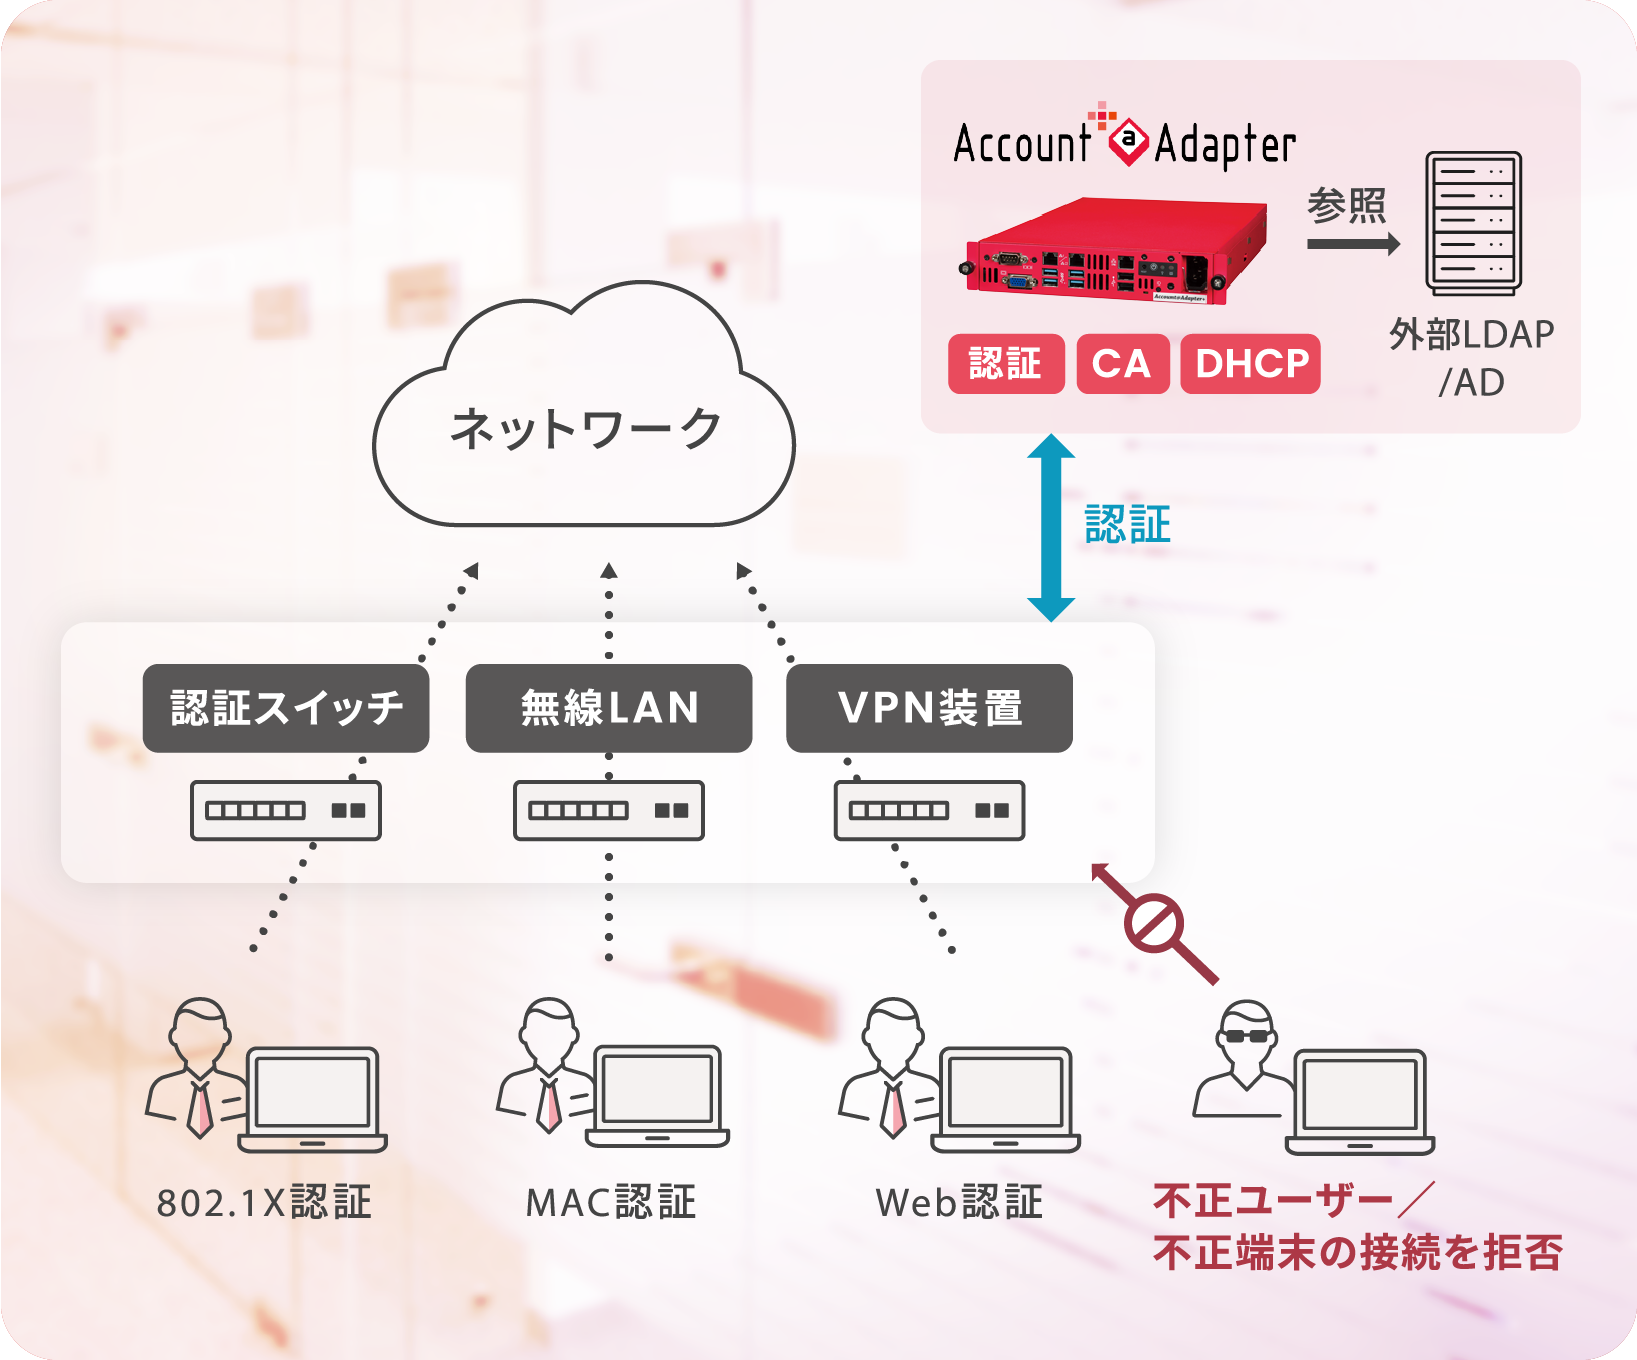 認証スイッチ、無線LAN、VPN装置の認証をAccount@Adapter+1台で実施